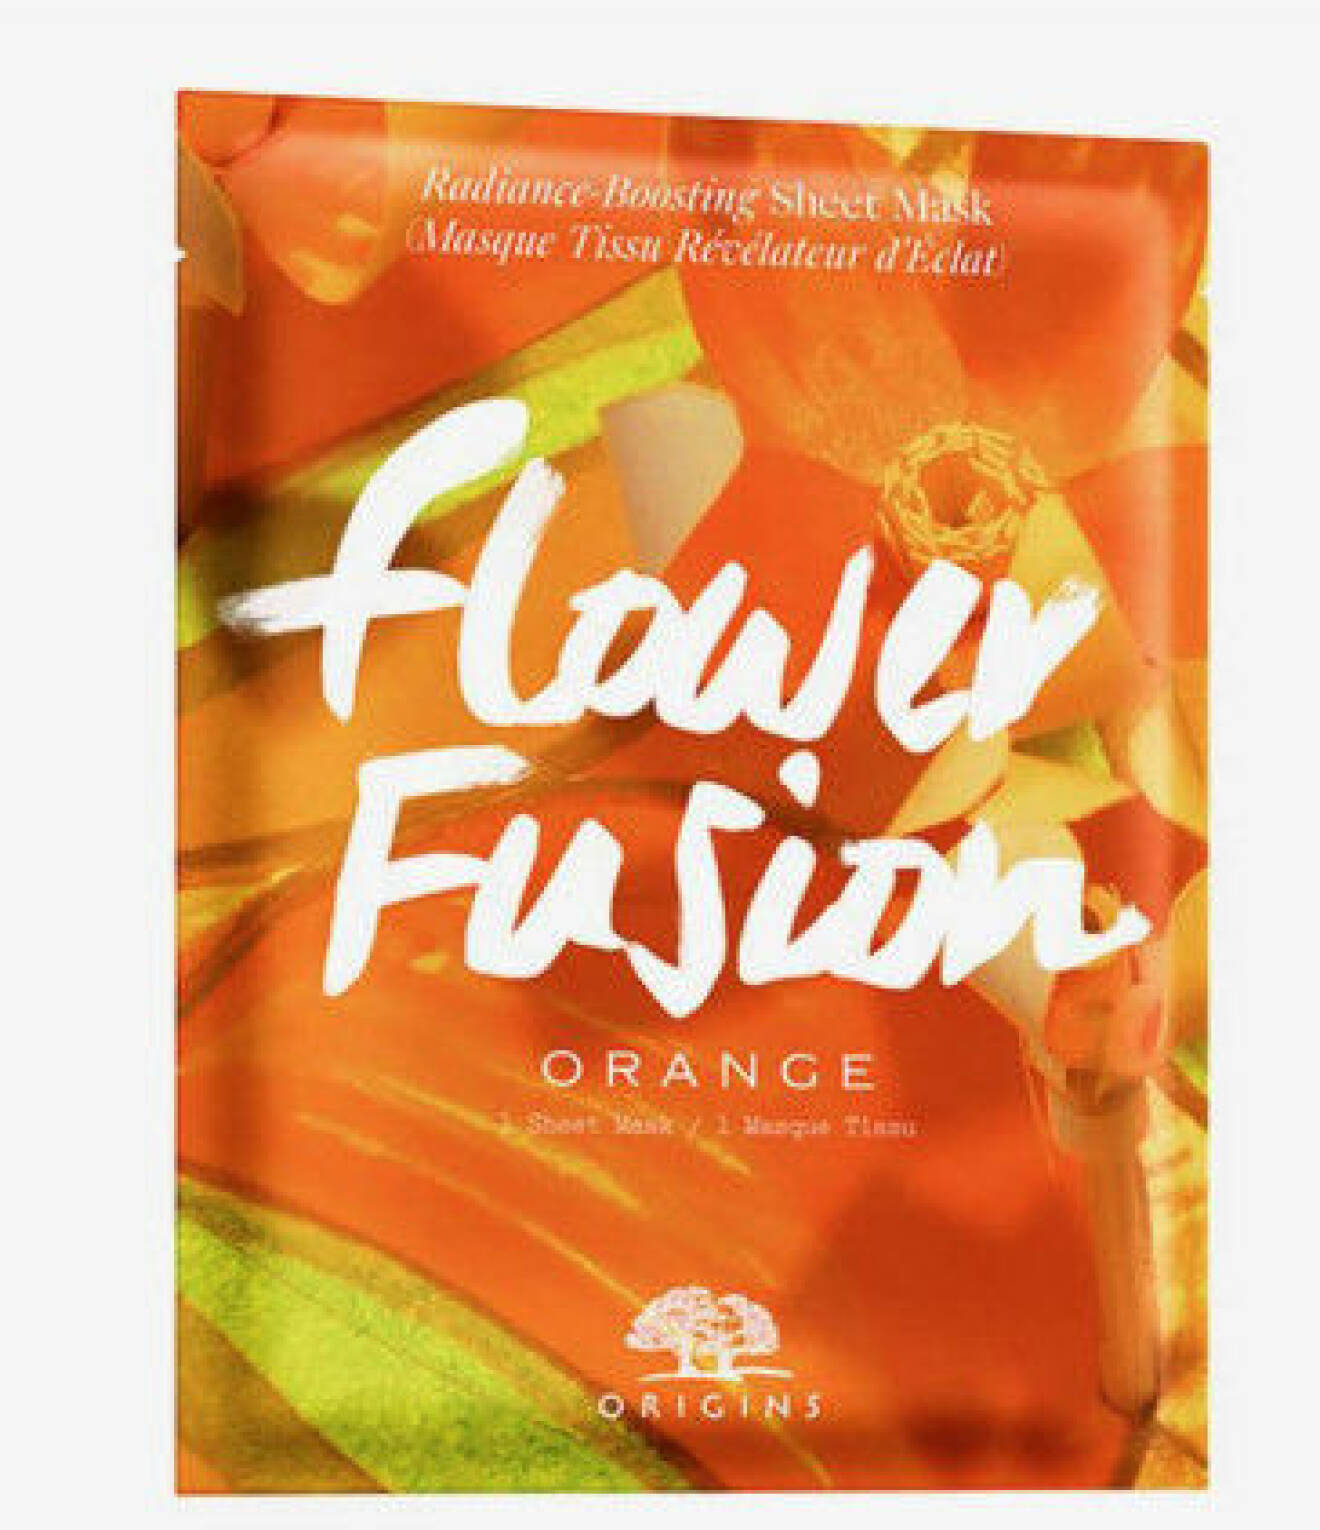 Orange arkmask med apelsin som heter Flower Fusion och kommer från Origins.